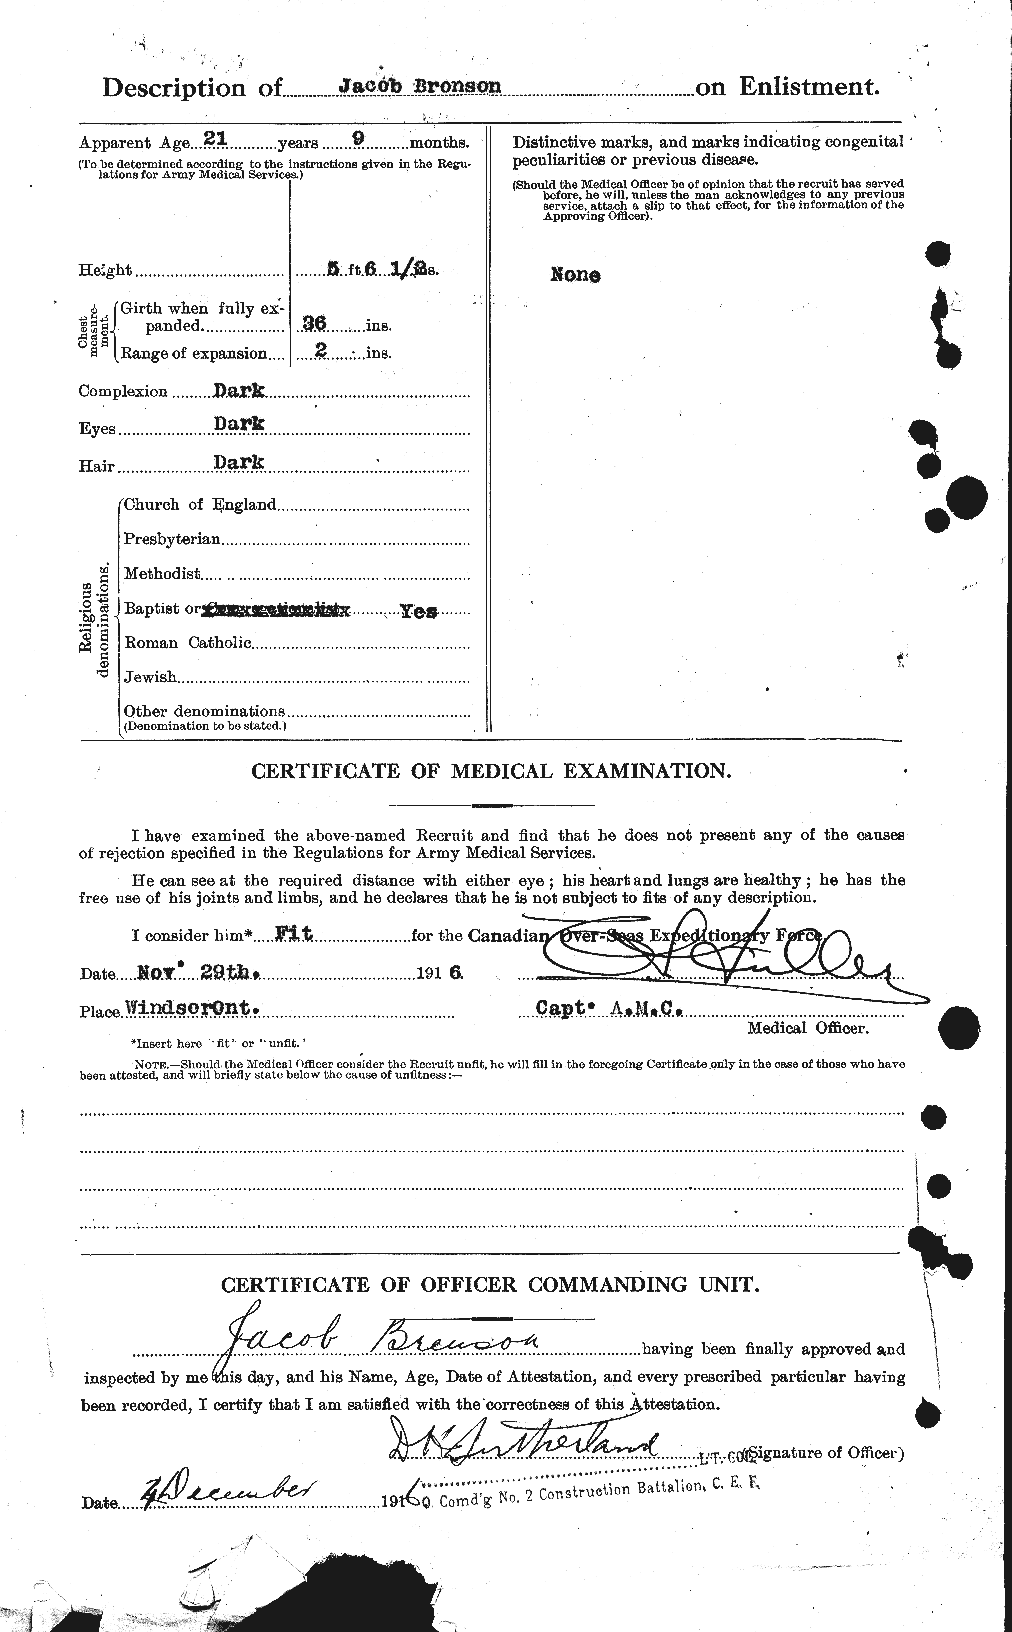 Dossiers du Personnel de la Première Guerre mondiale - CEC 262235b